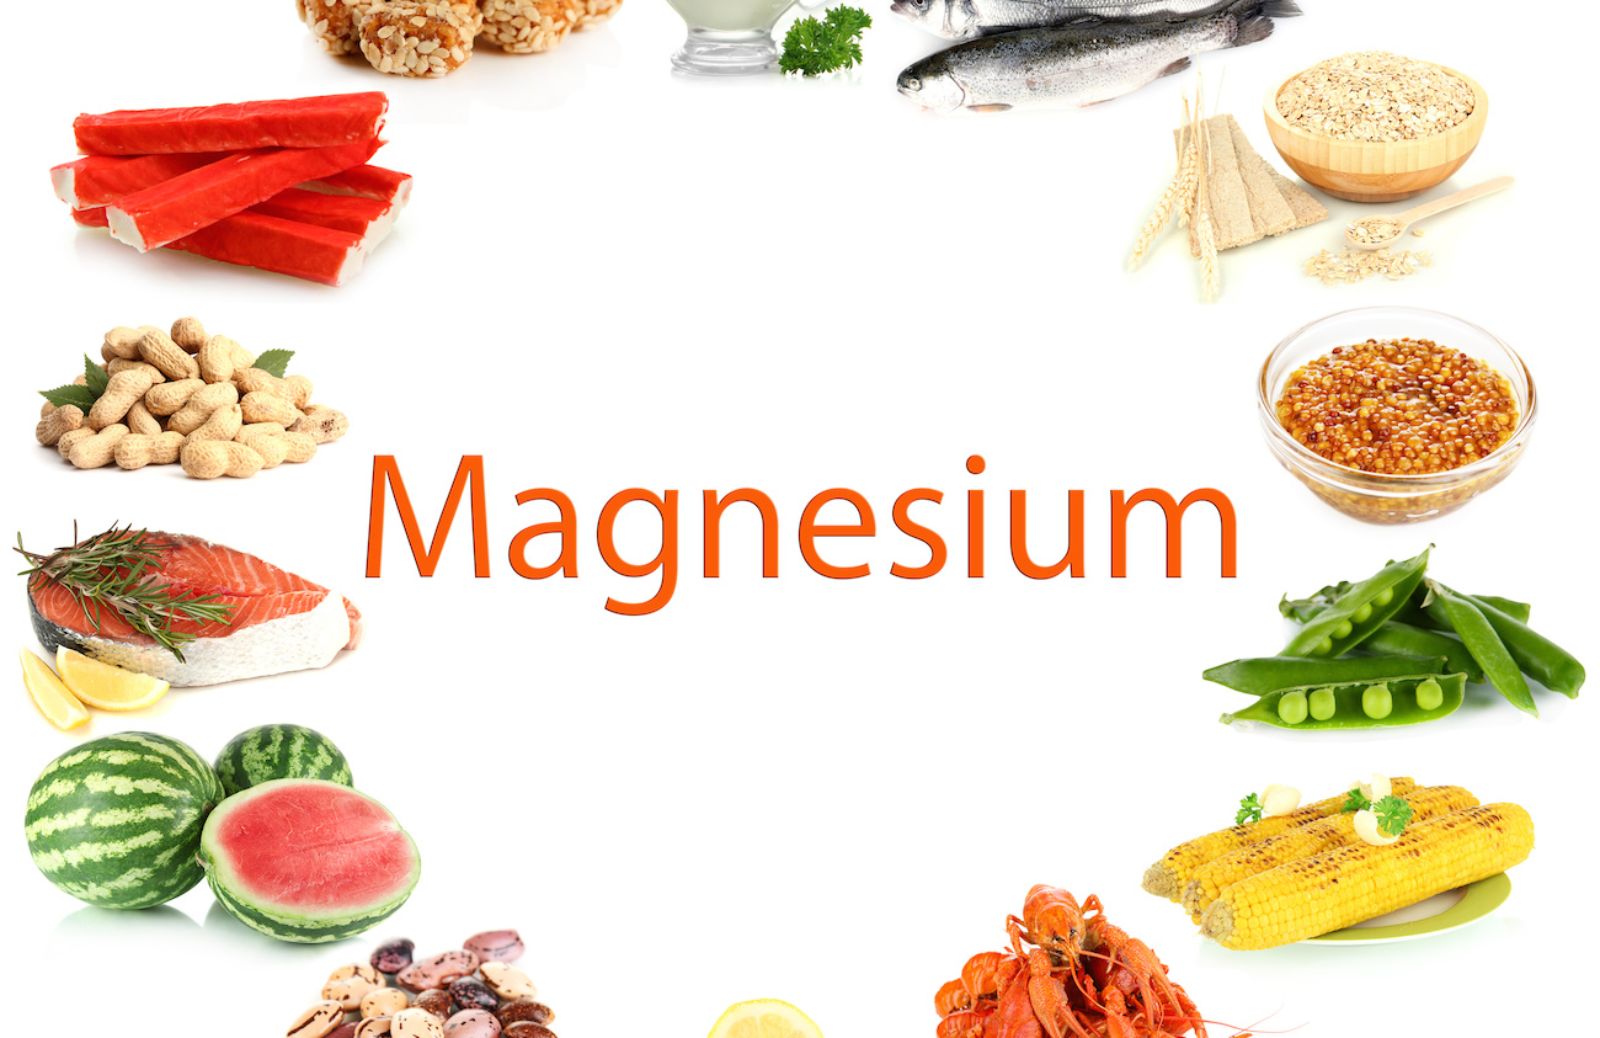 Come proteggere la salute con il magnesio